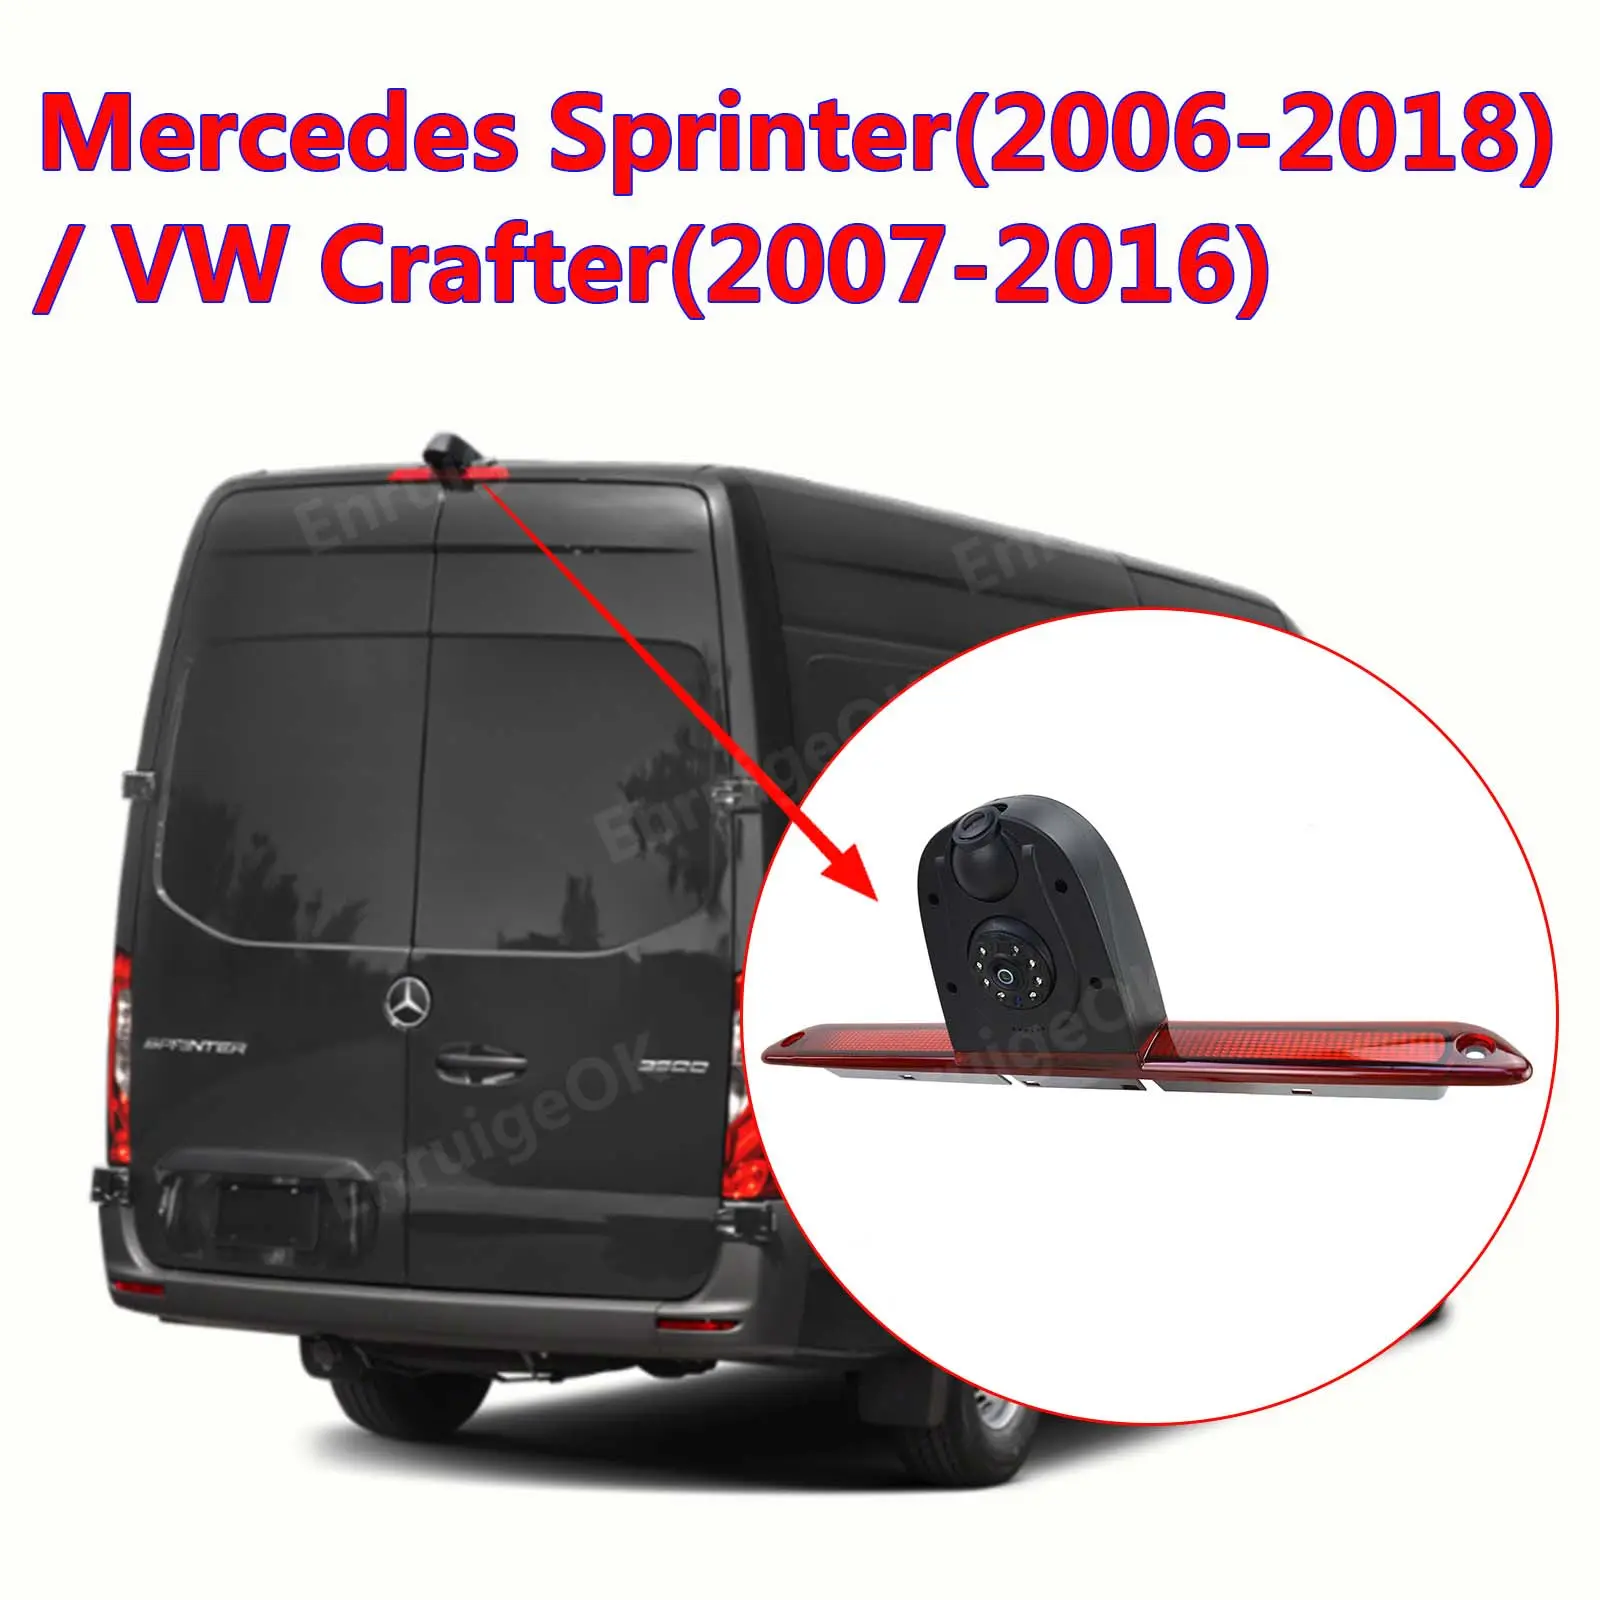 Lâmpada de freio para RV, lente grande angular dupla, lâmpada de freio para Mercedes-Benz Sprinter, VW Crafter, câmera de visão traseira